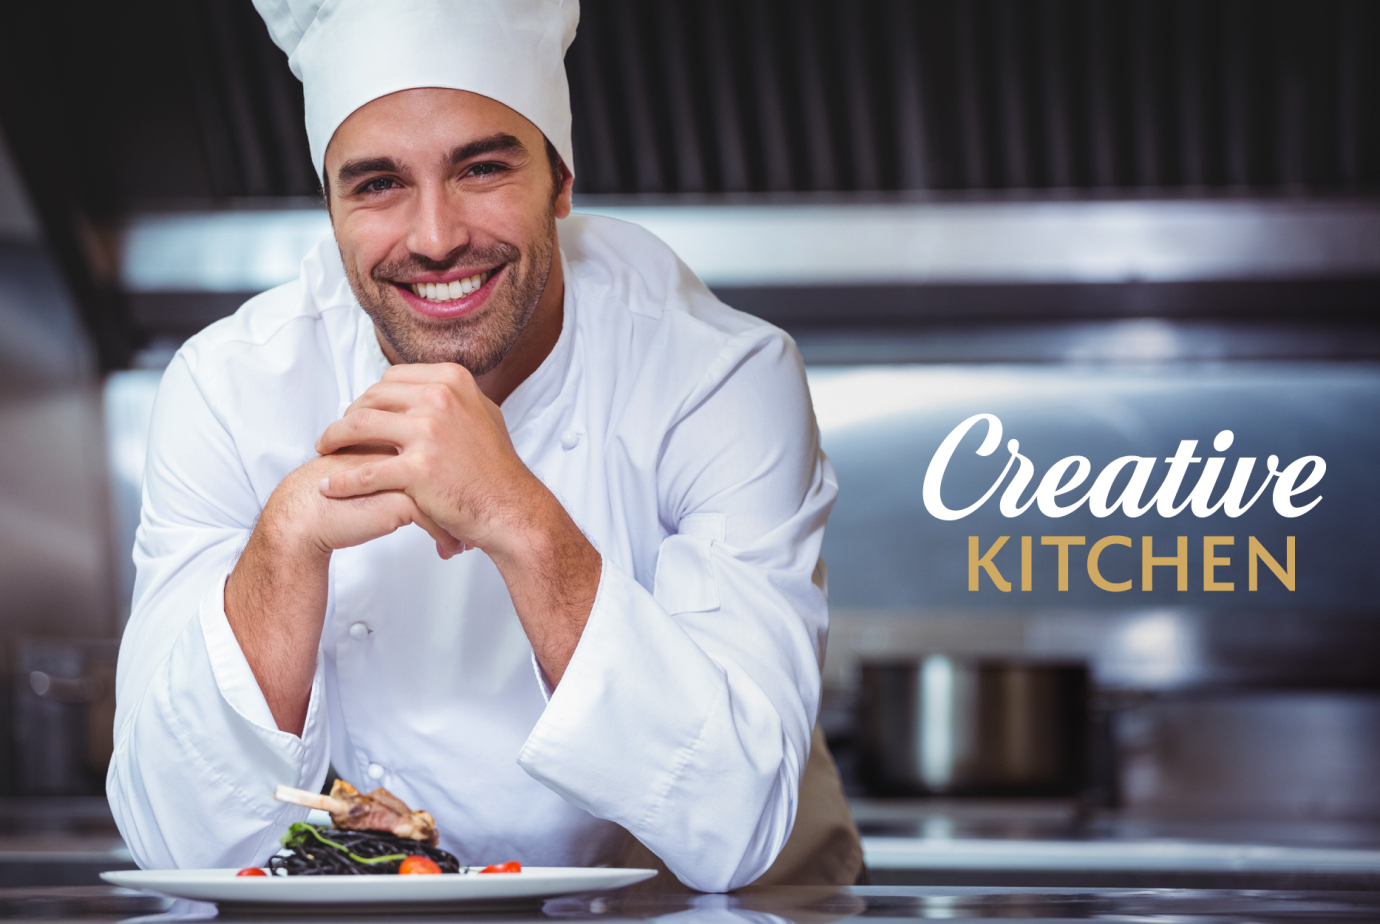 Пример создания бренда продукта — брендинг Creative Kitchen, предлагающего свежеприготовленные блюда из разных стран мира в аппетитной подаче. Фудстайлинг помогает подчеркнуть гастрономический характер бренда. 